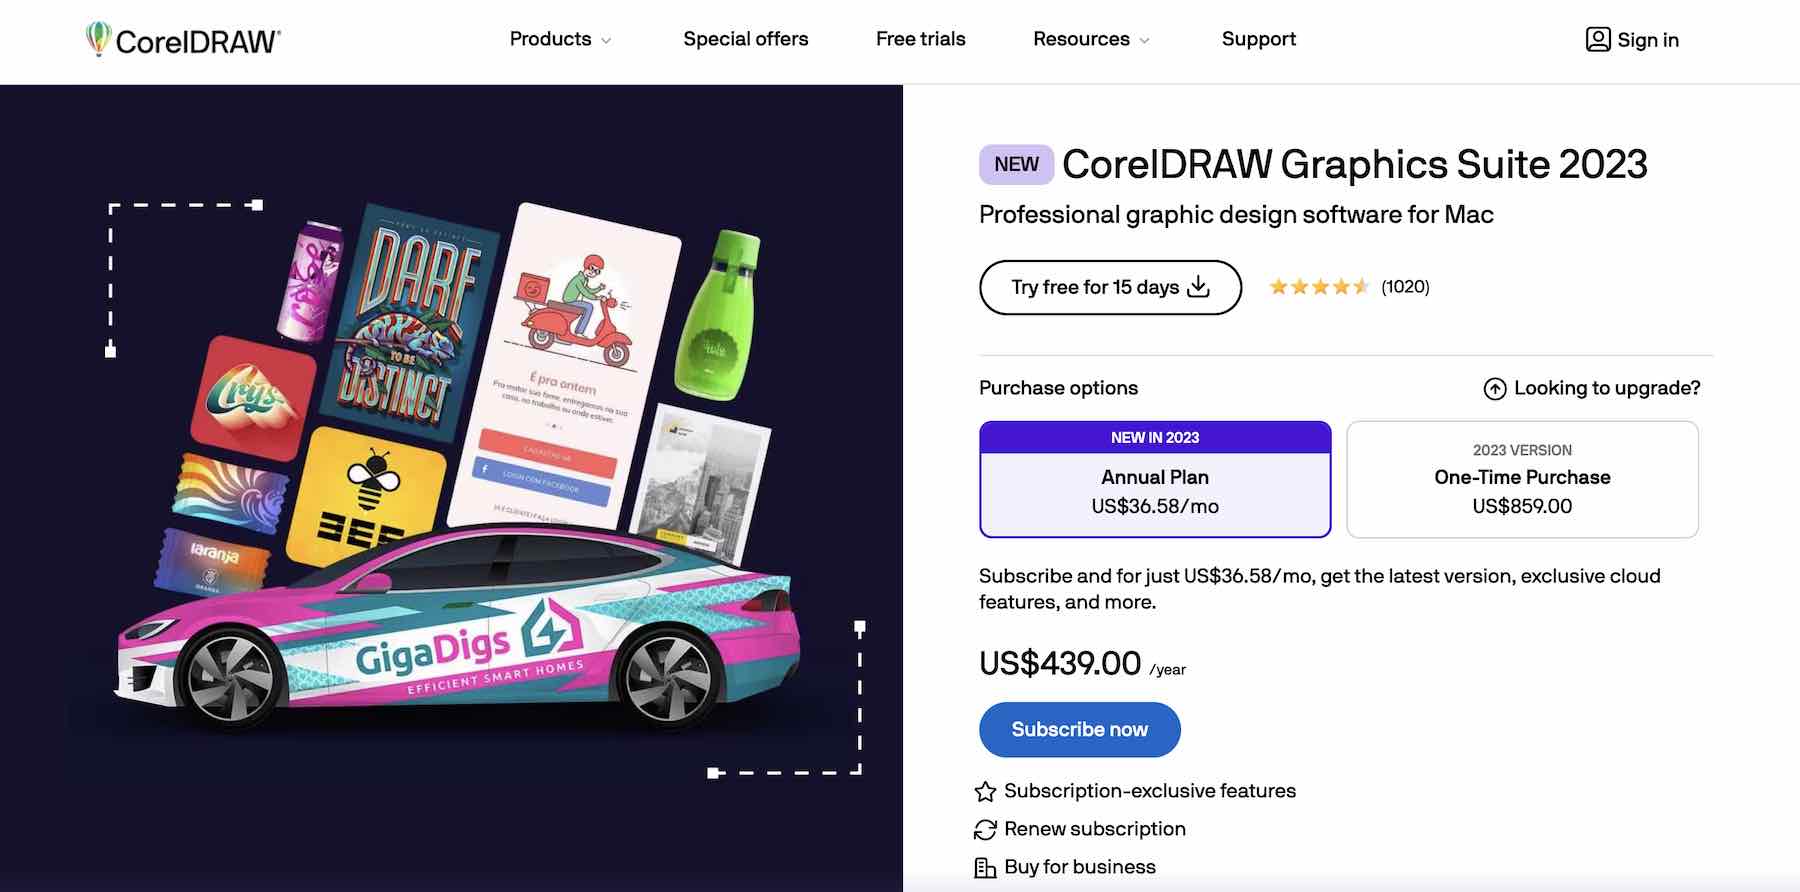 Capture d'écran du site Web CorelDRAW montrant les plans tarifaires